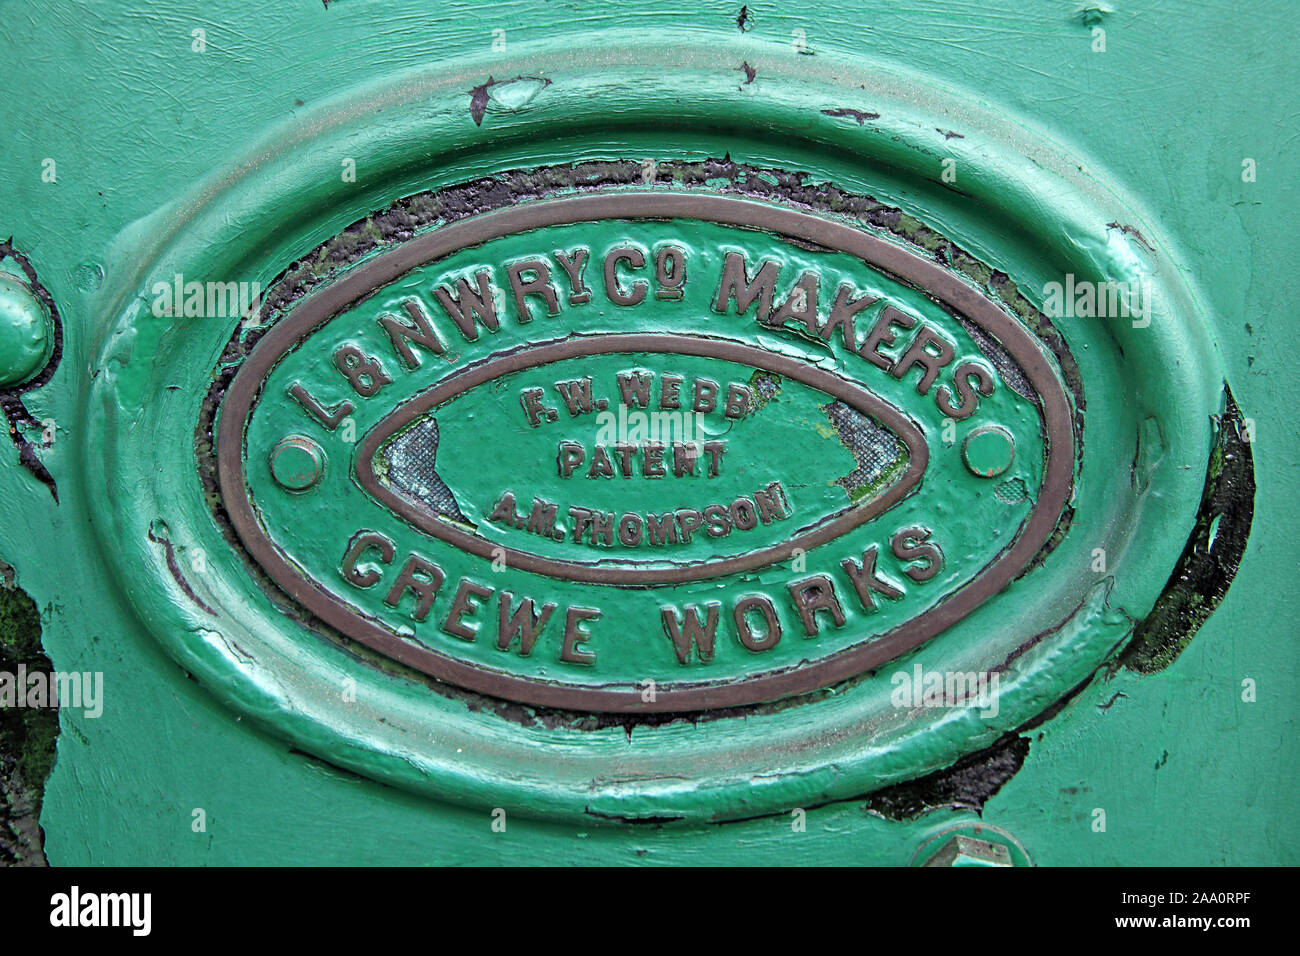 Plaque de décideurs, vert, L&NWryCo décideurs, London and North Western Railway,Crewe Works, FW Webb, brevet,Suis Thompson Banque D'Images